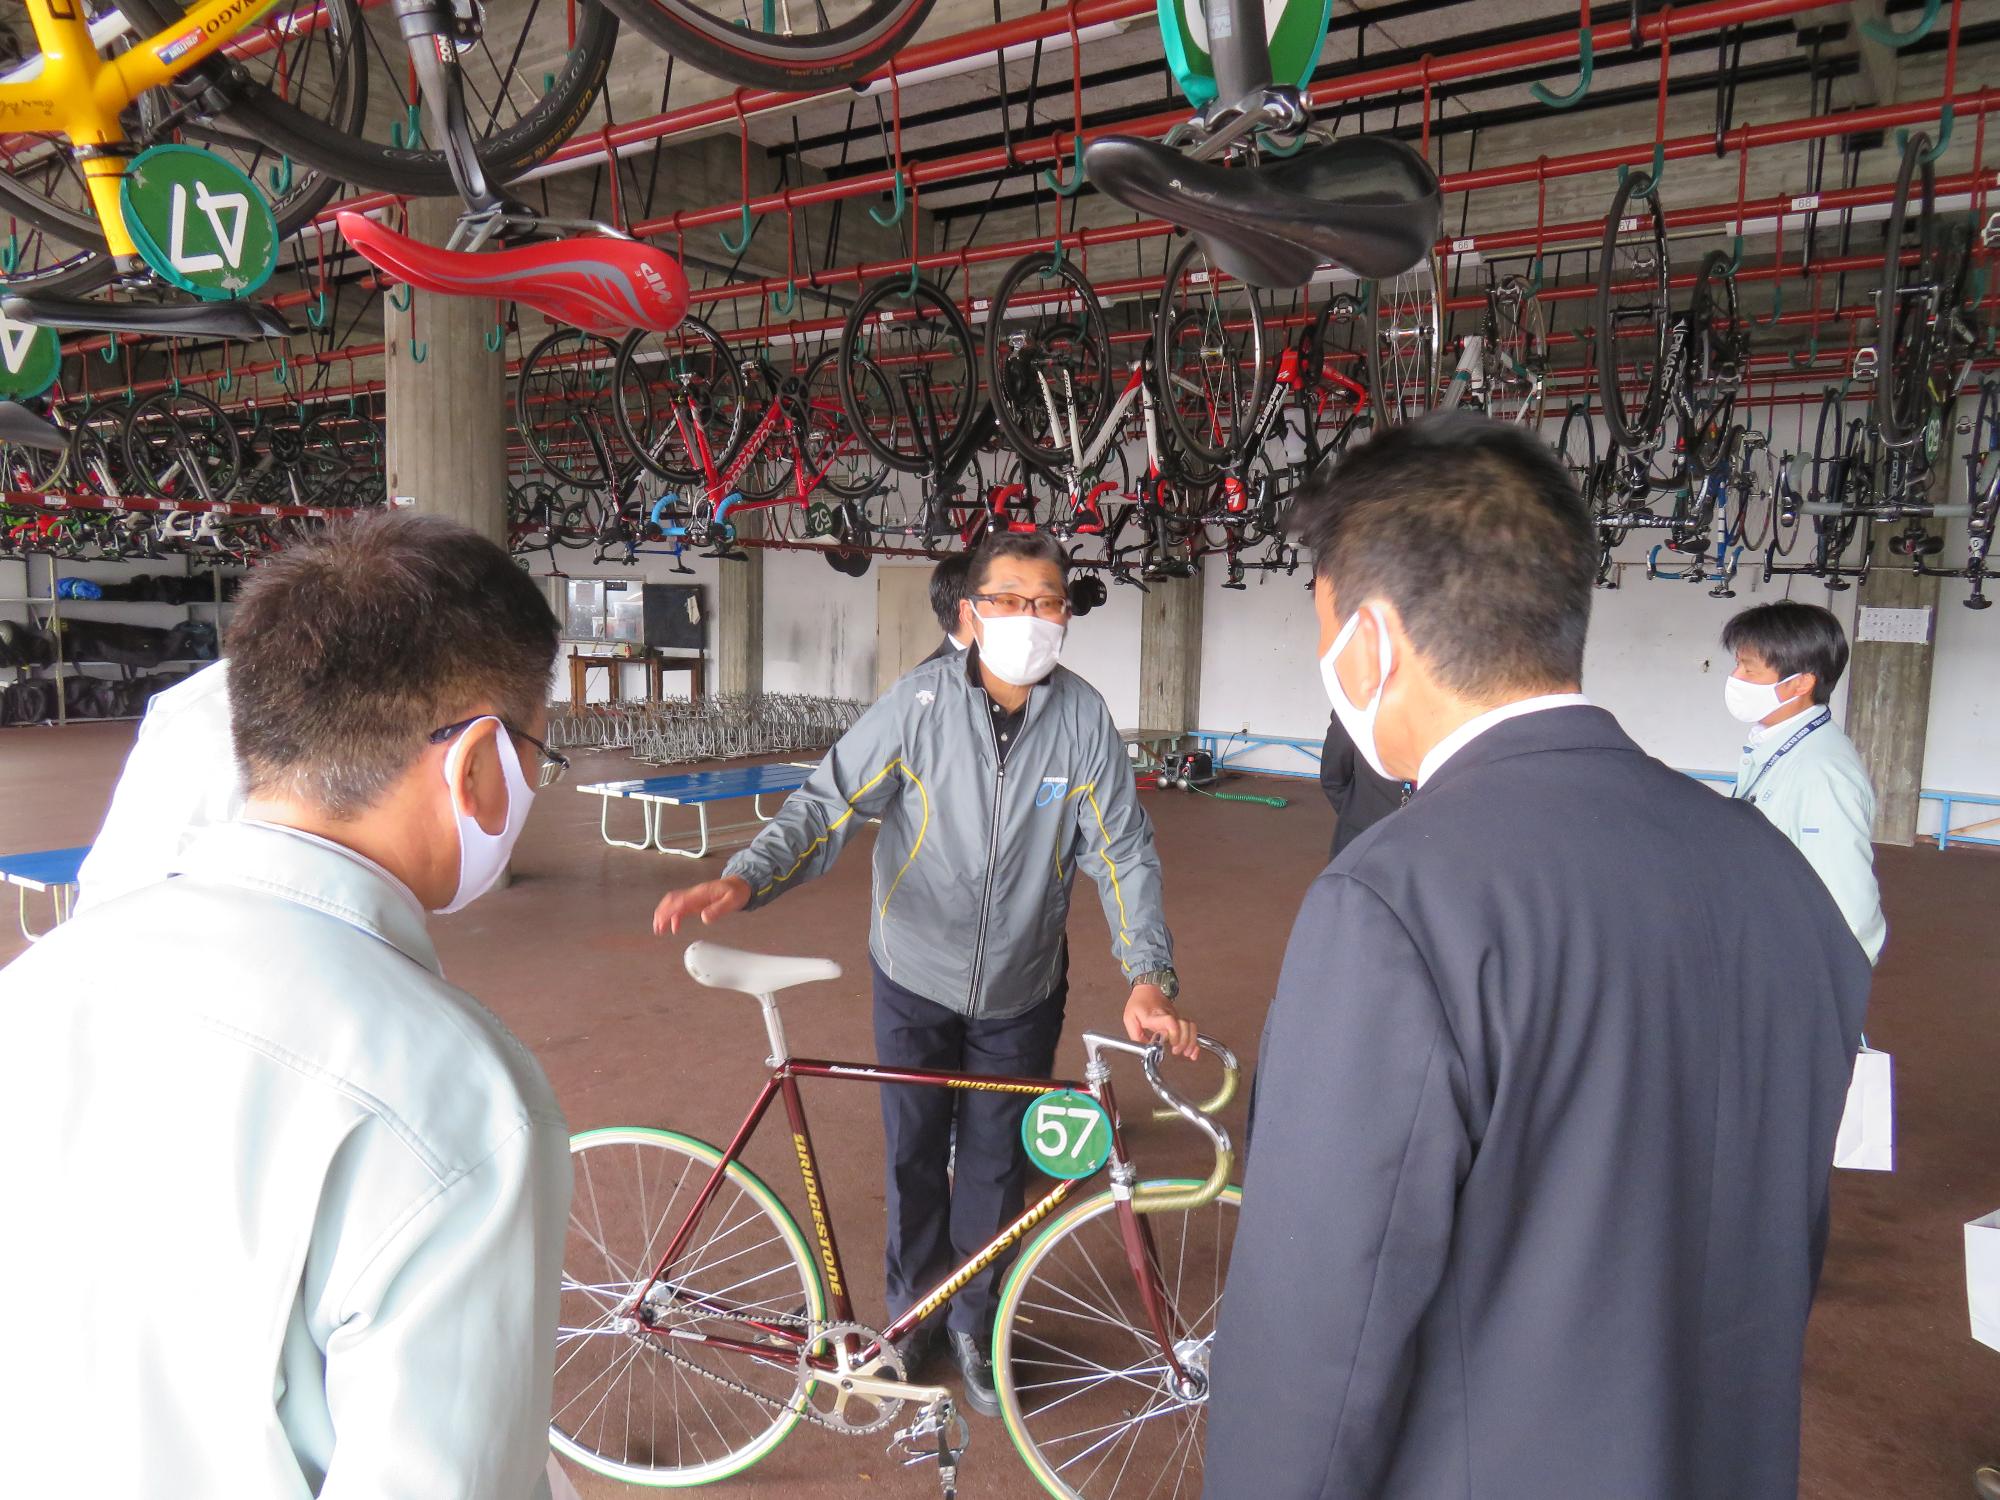 格納庫でメガネをかけた男性が57番と番号のついた自転車を触りながら職員達に説明をしている写真